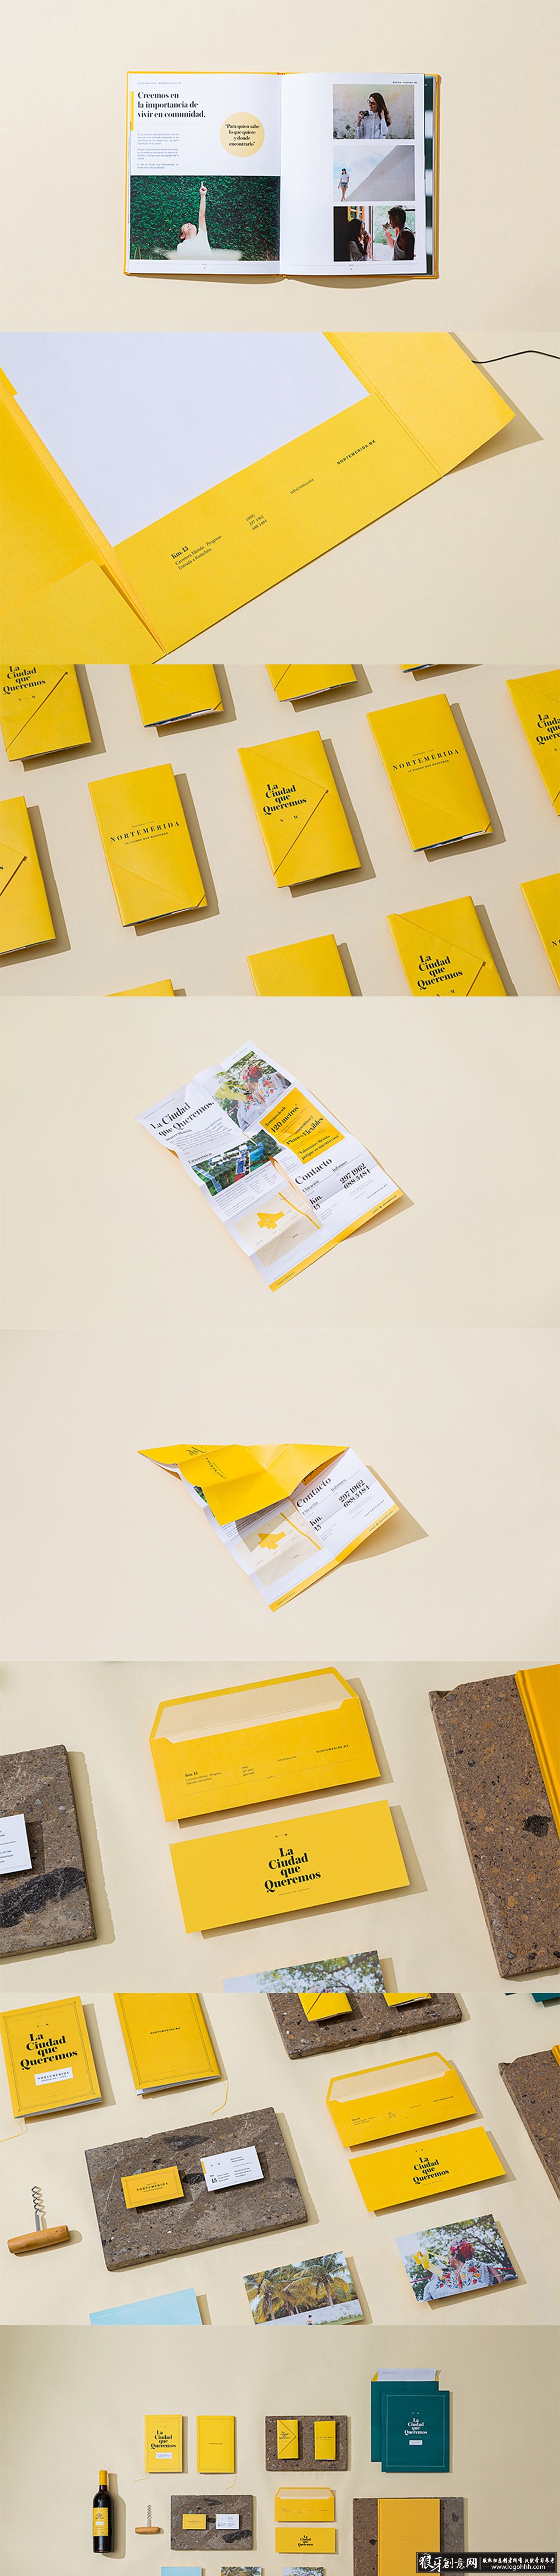 画册 折页 传单 信封 名片 海报 弹簧 企业画册 创意画册包装设计